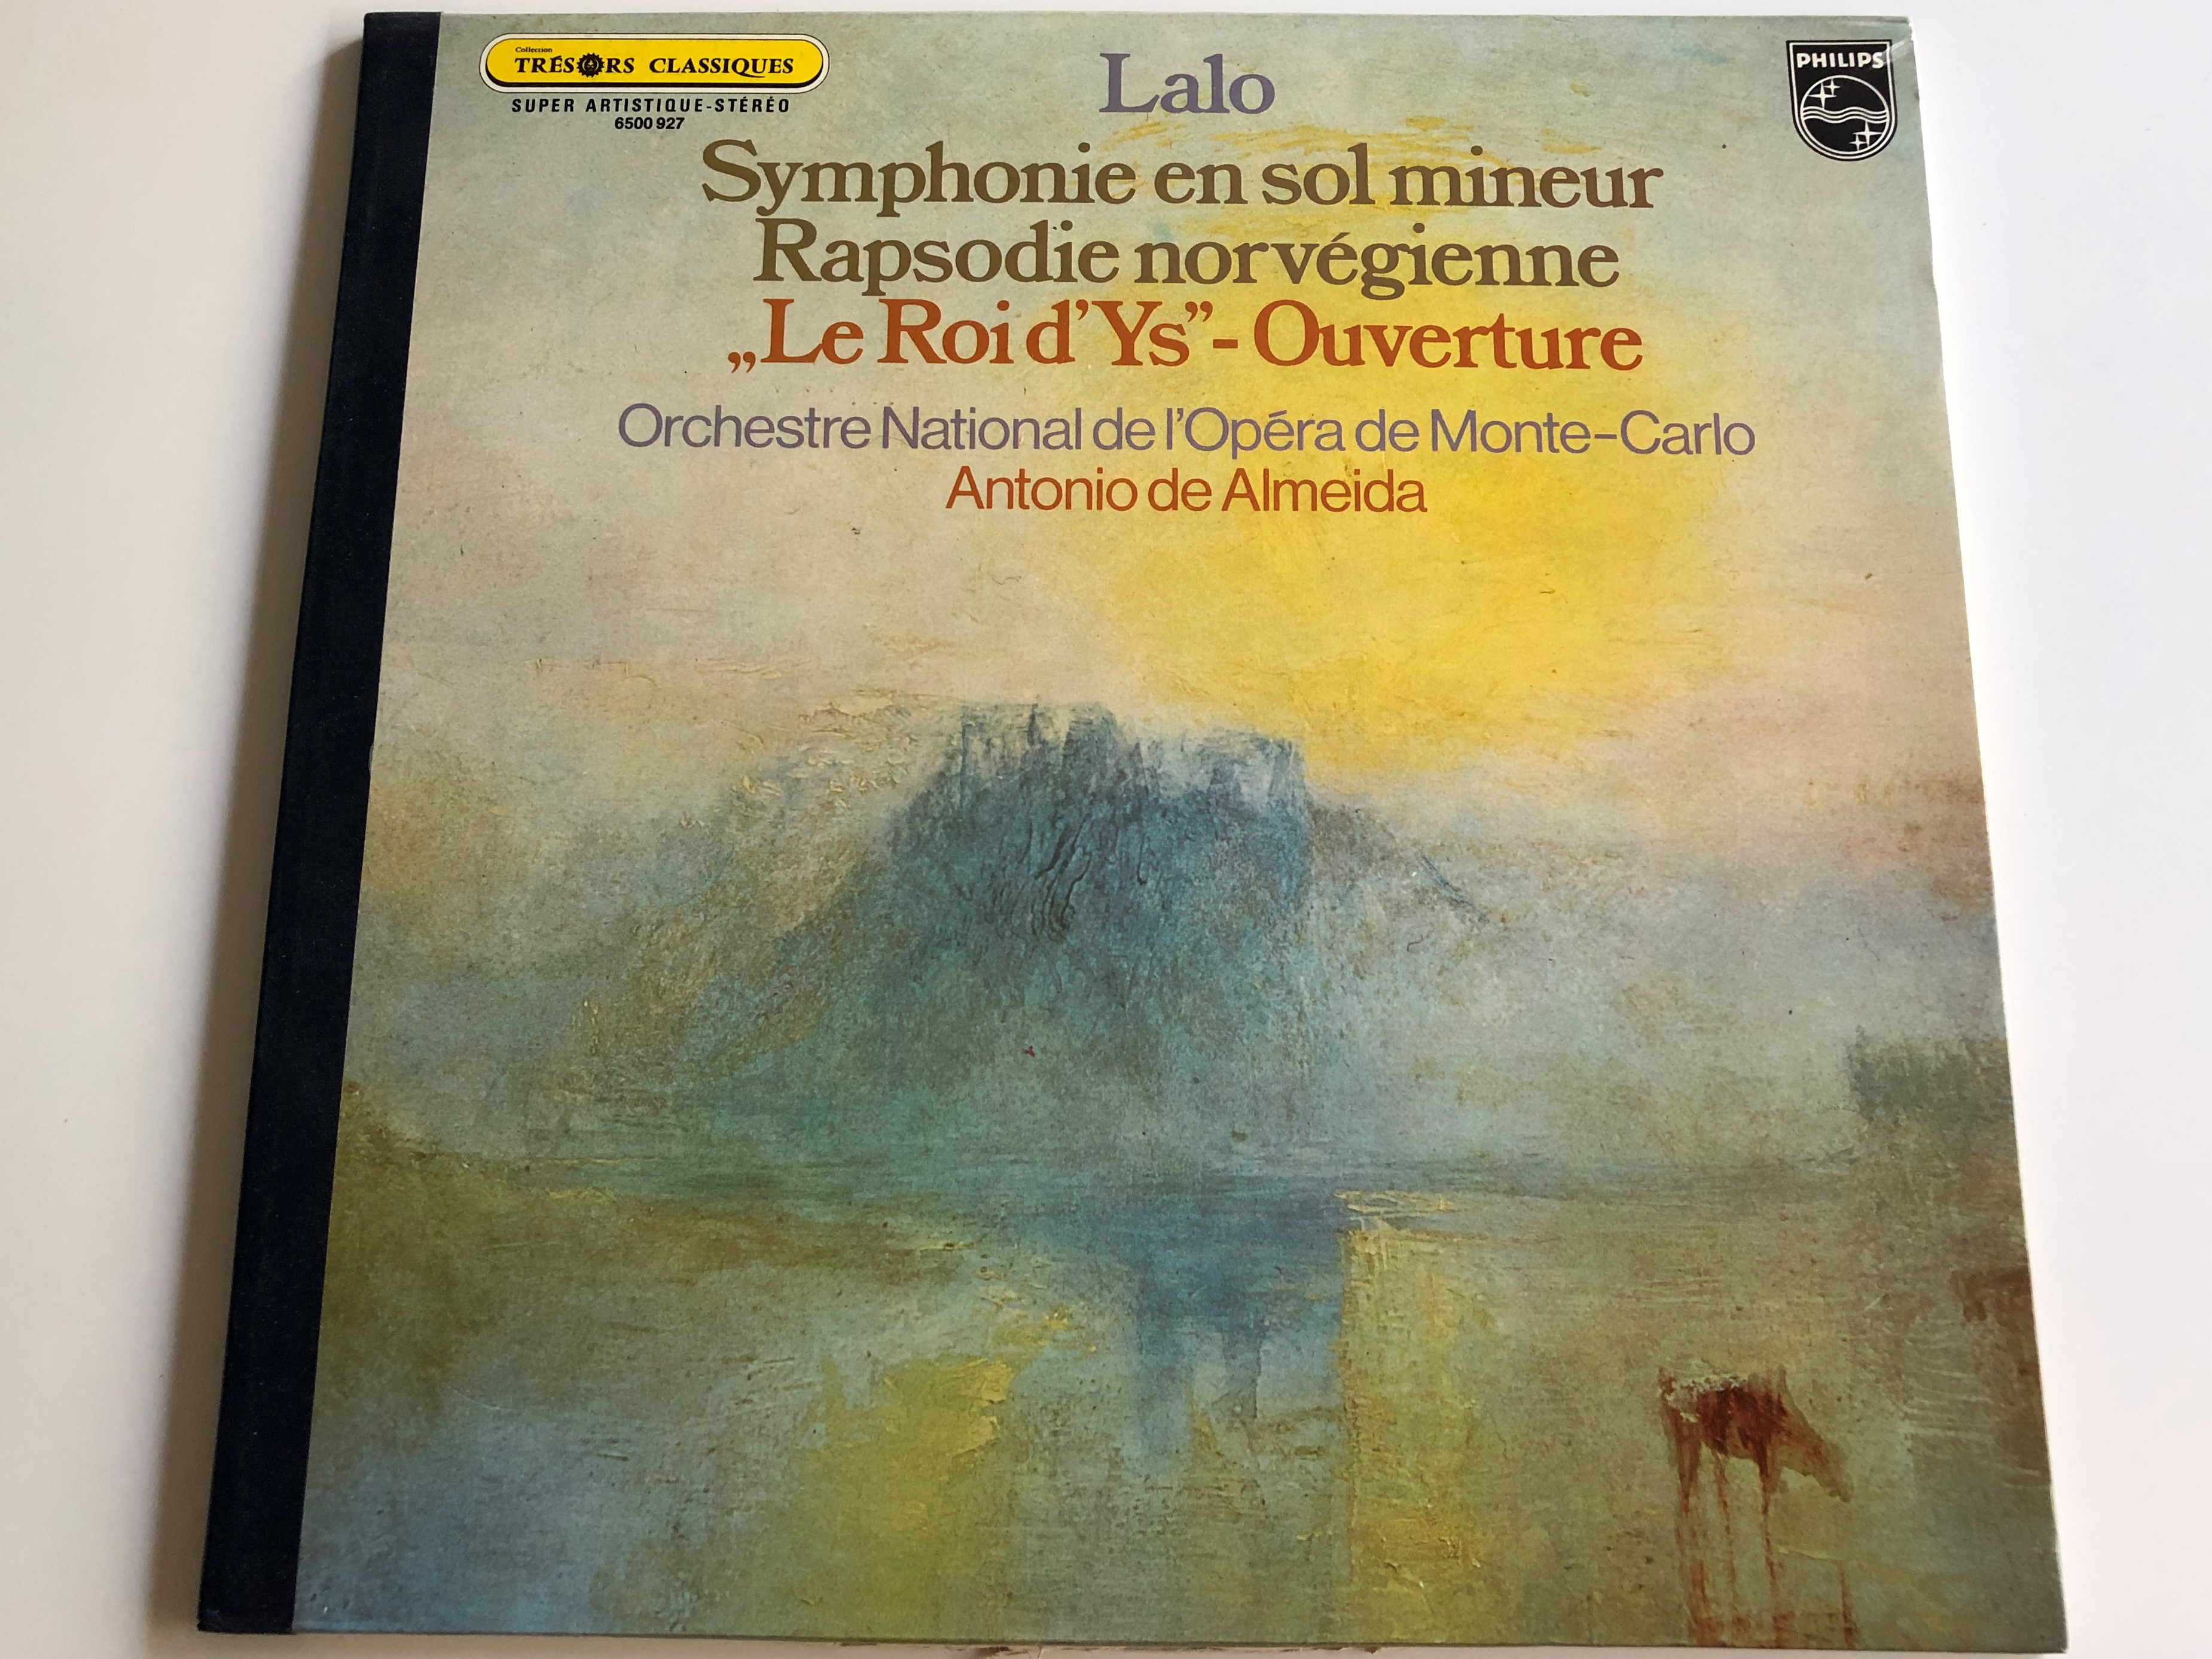 lalo-symphonie-en-sol-mineur-rapsodie-norvegienne-le-roi-d-ys-ouverture-orchestre-national-de-l-opera-de-monte-carlo-conducted-by-antonio-de-almeida-6500-927-1-.jpg